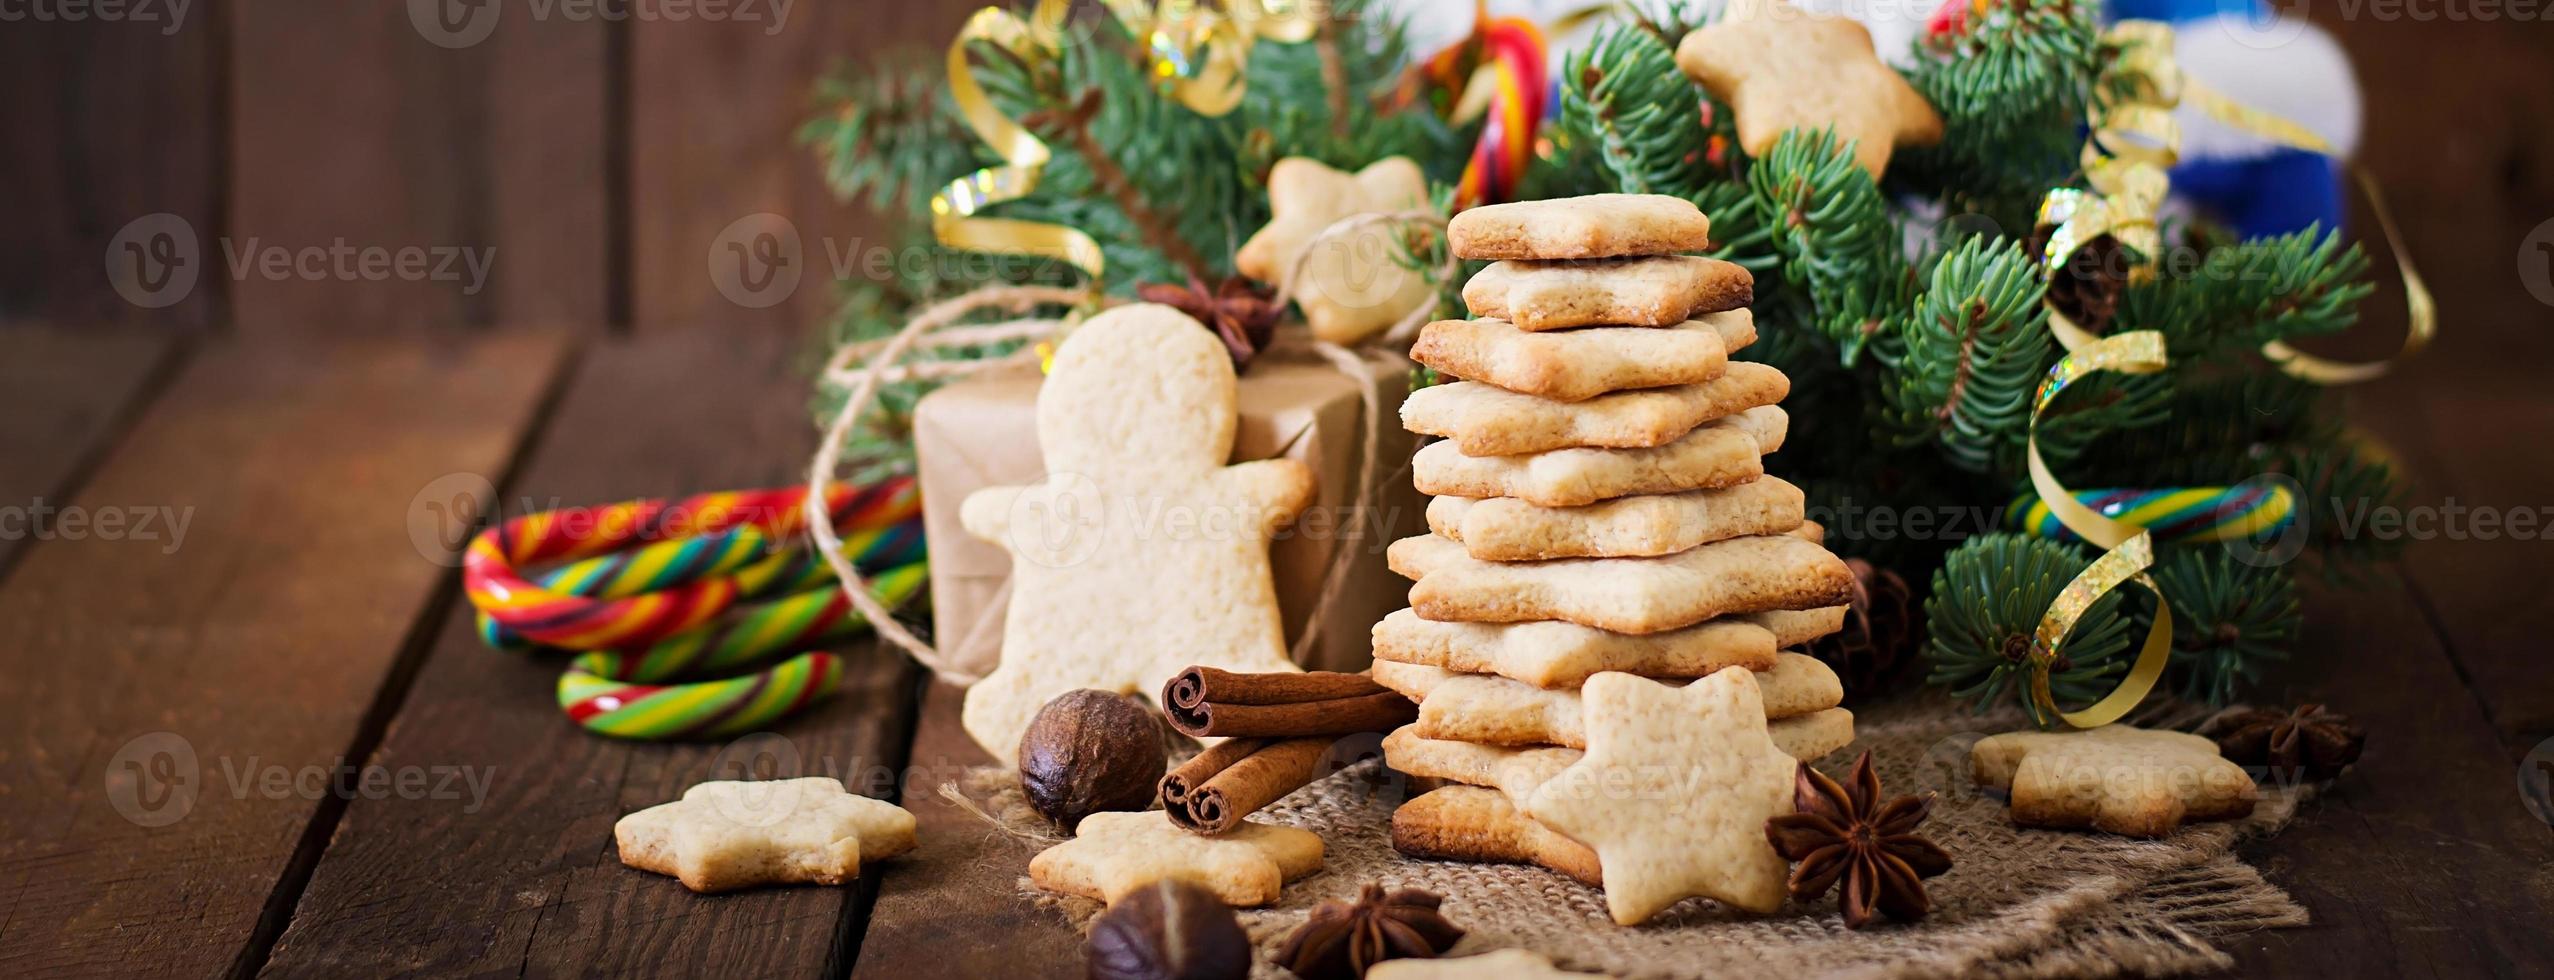 galletas navideñas y oropel sobre un fondo de madera foto